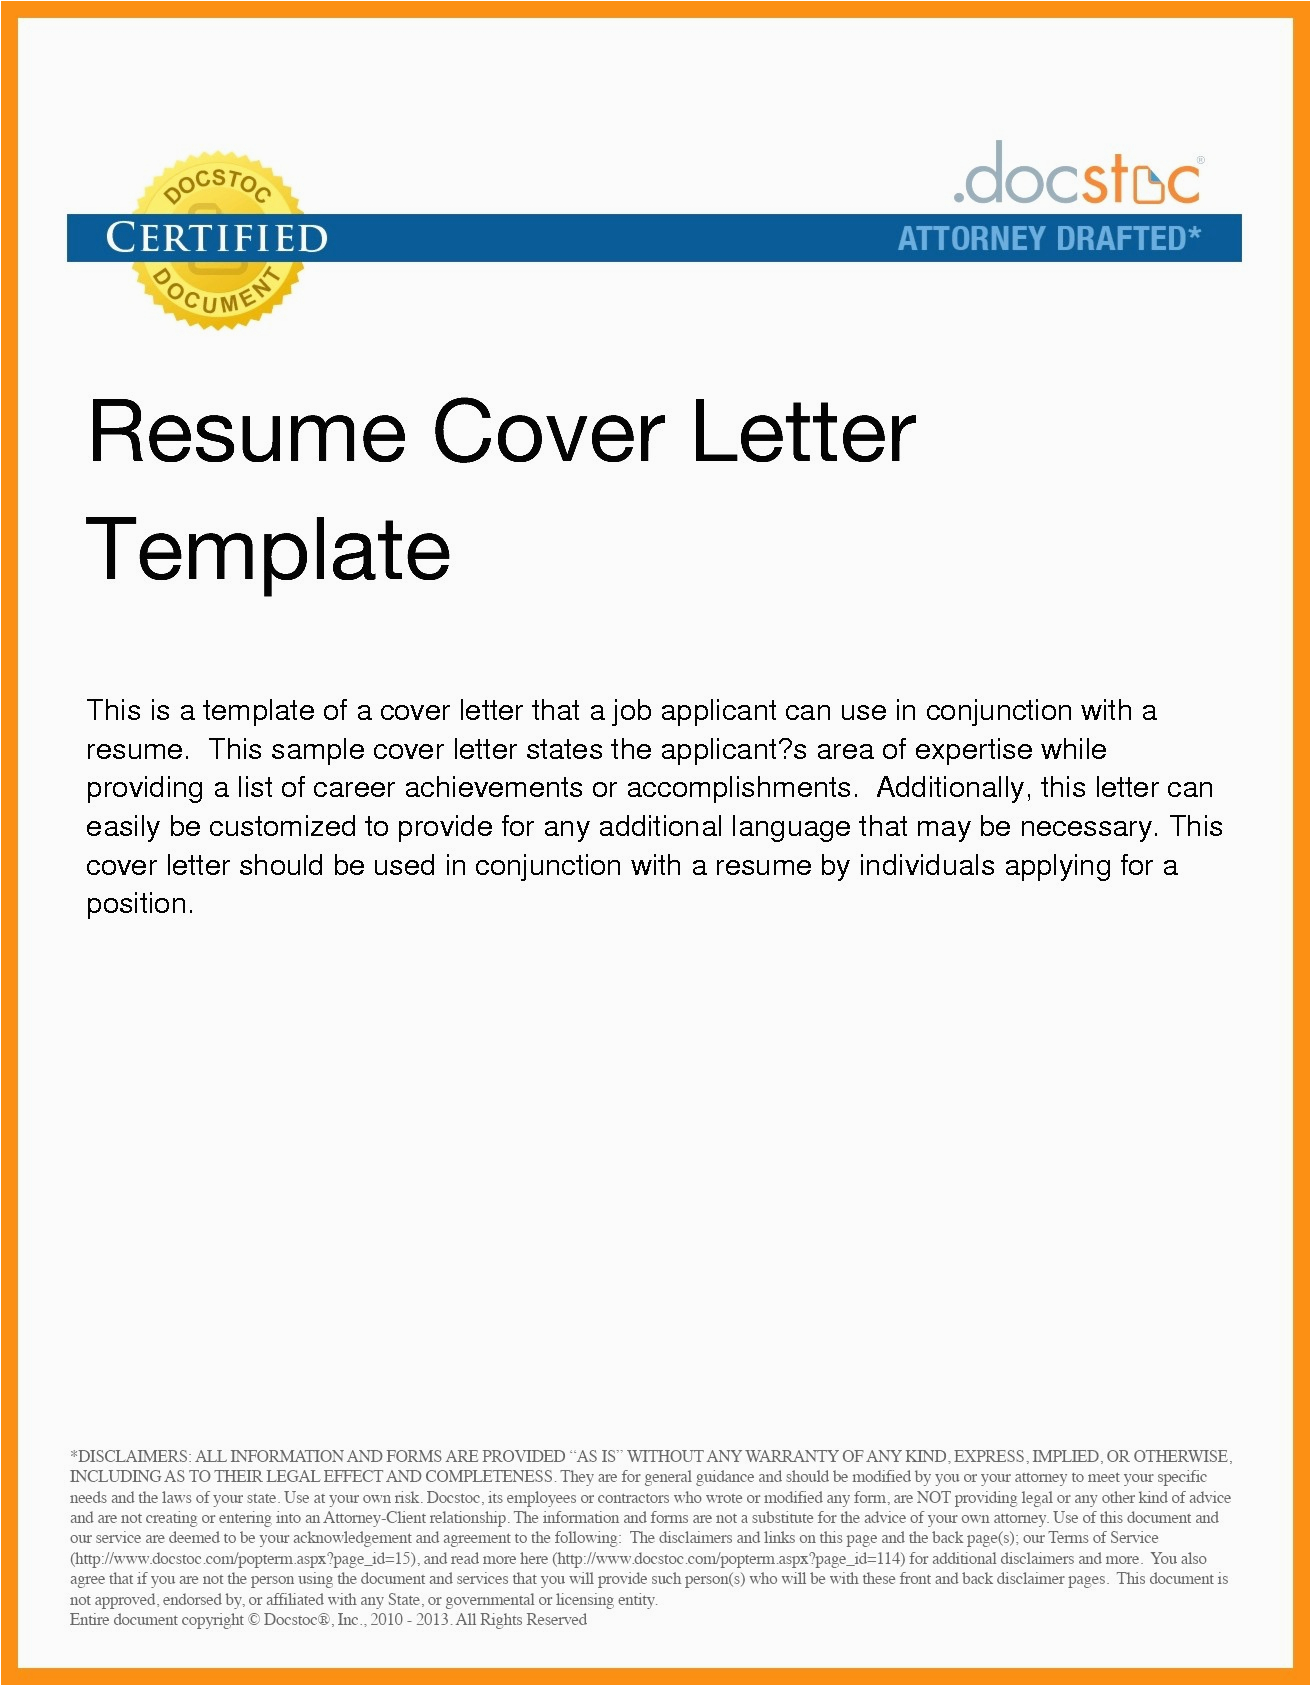 Sample Cover Letter for Sending Resume Via Email Sending Resume and Cover Letter by Email Collection